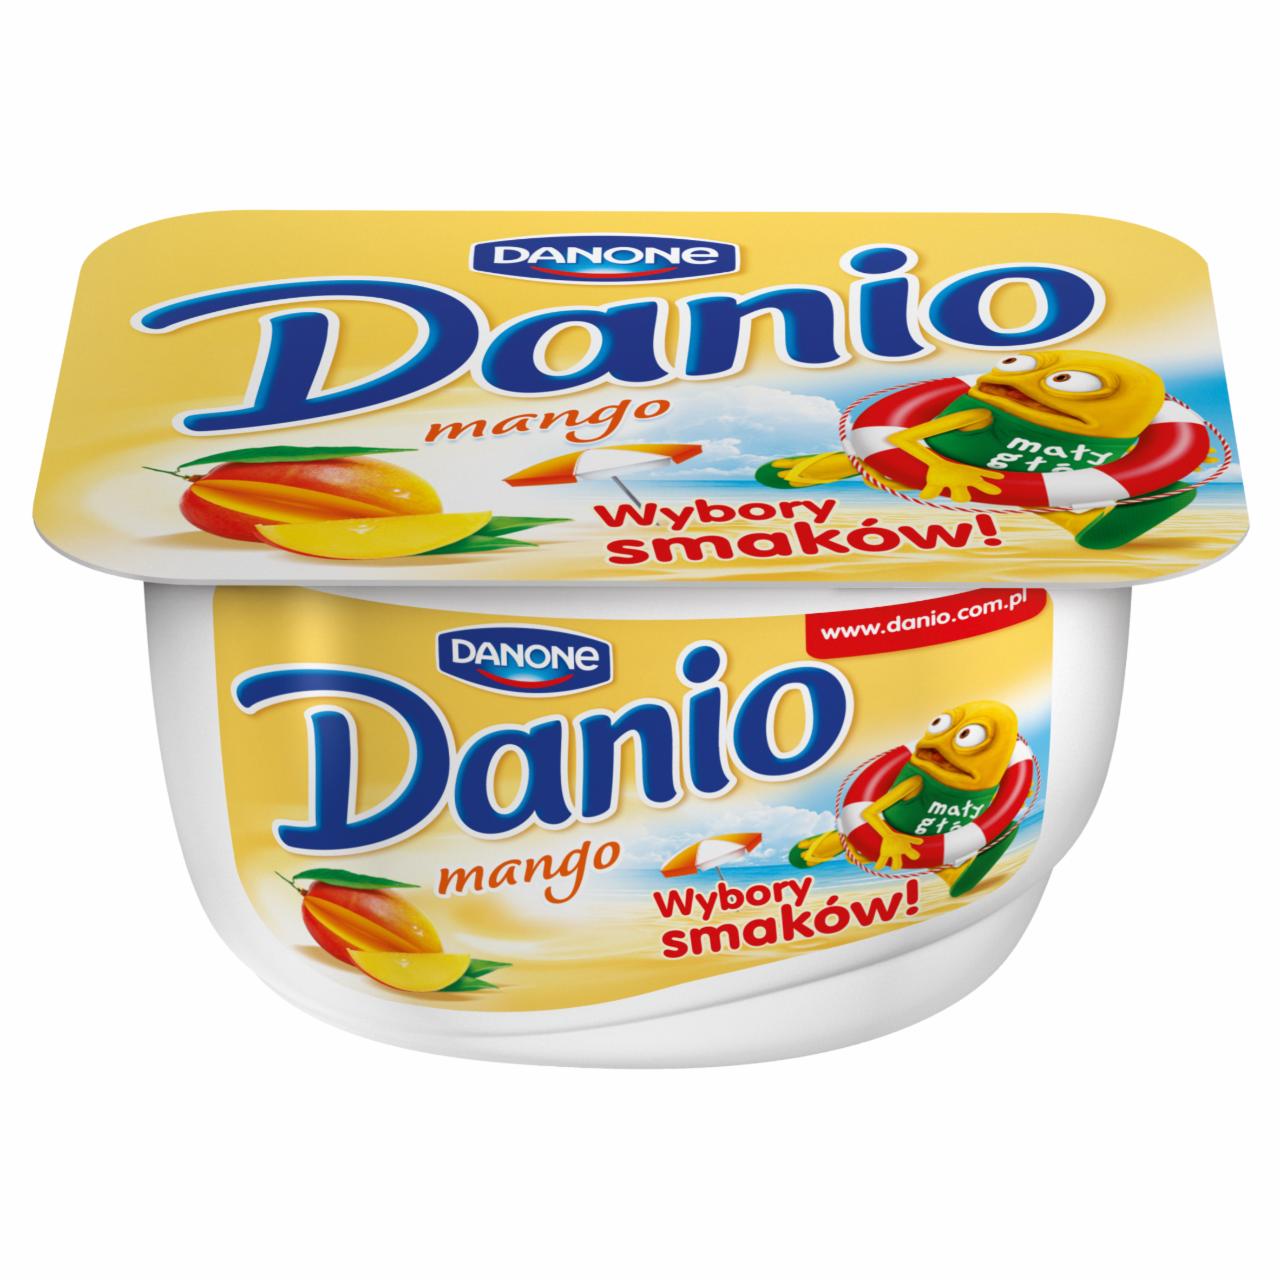 Zdjęcia - Danone Danio mango Serek homogenizowany 140 g